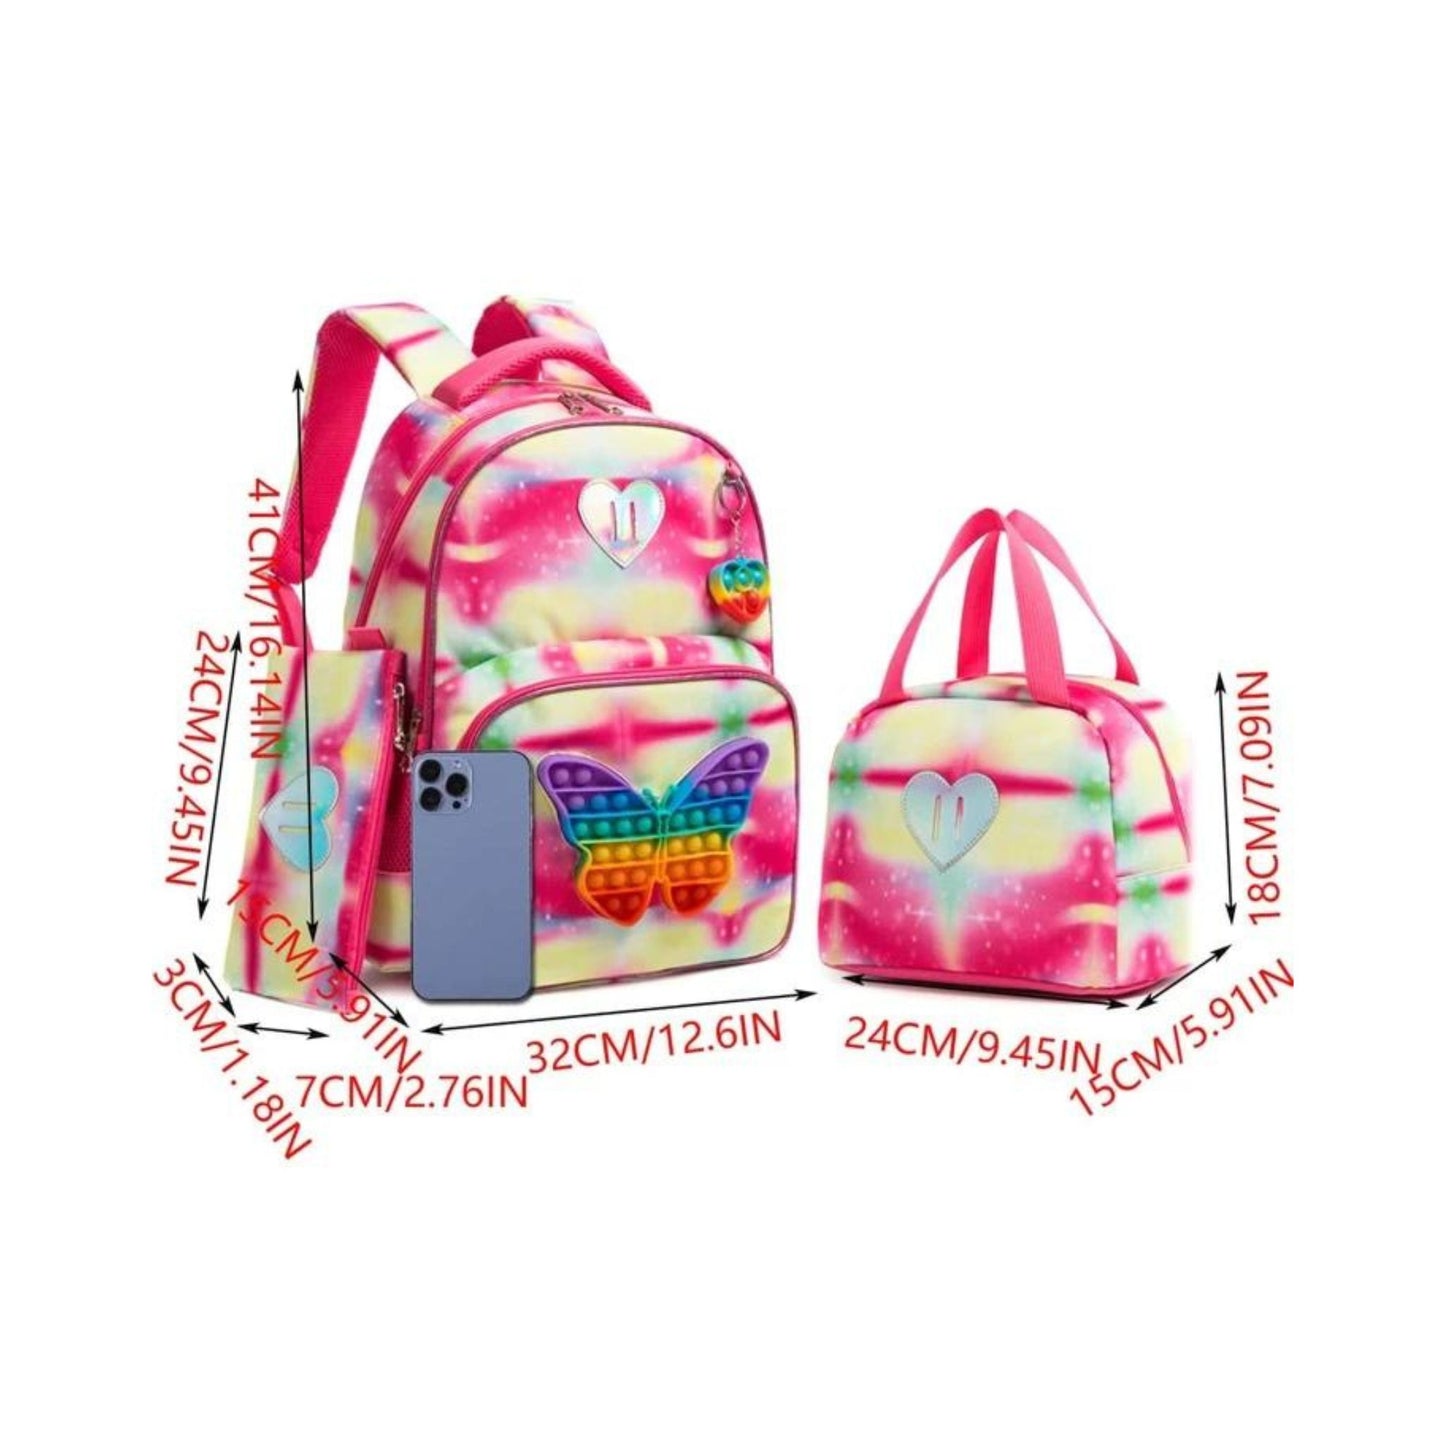 Butterfly Pop- it 3-Piece Backpack Set